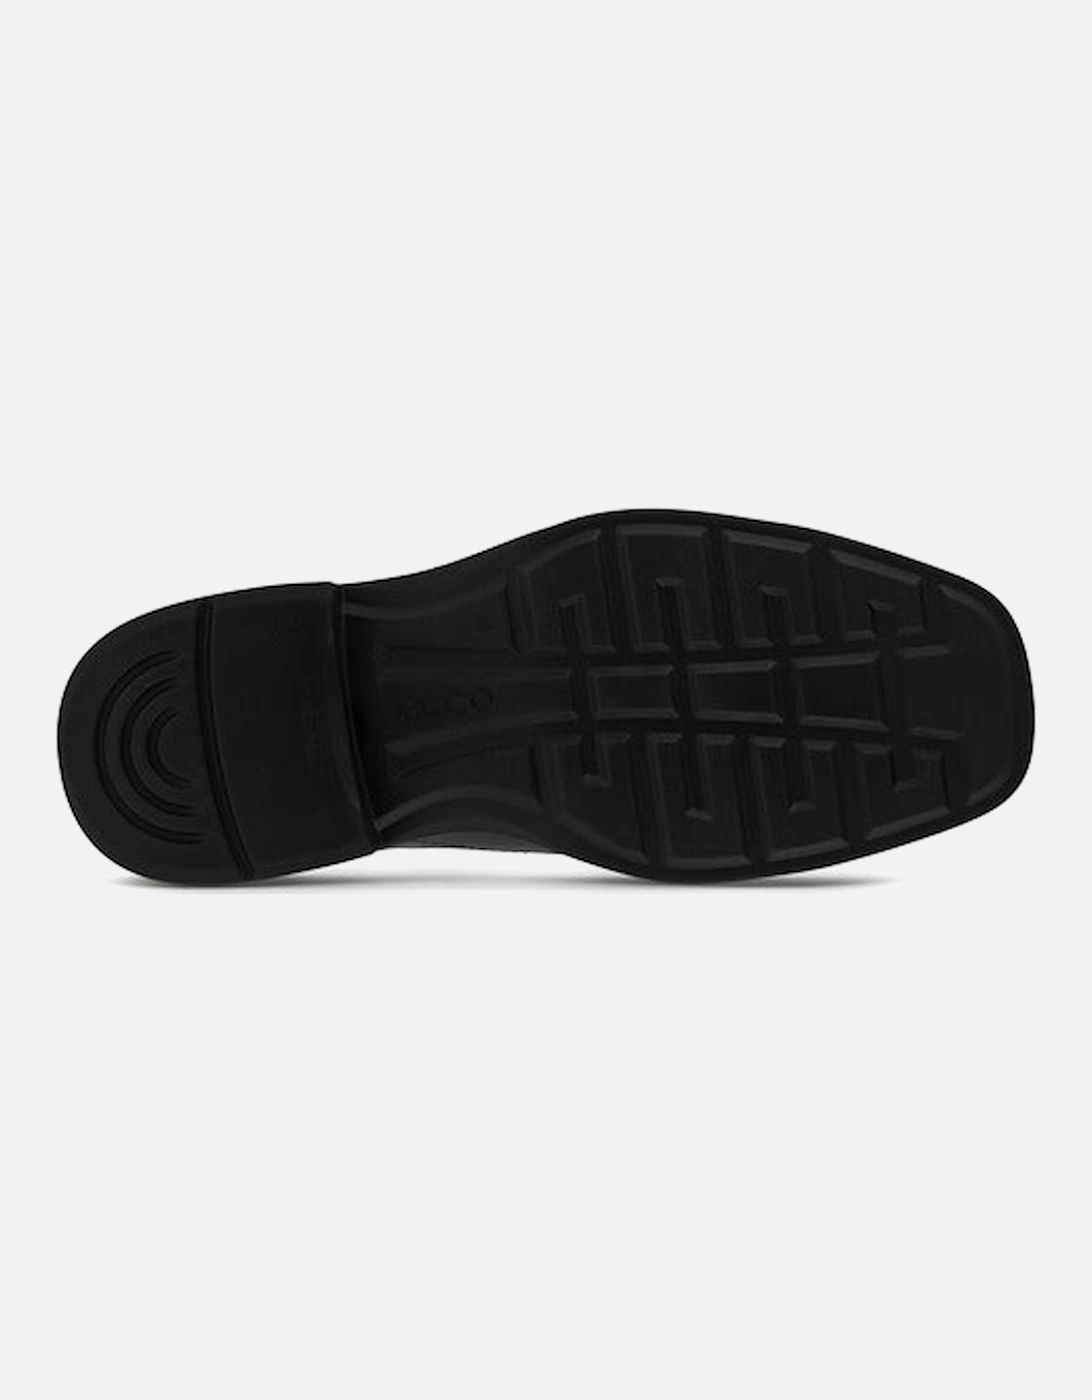 Mens Helsinki 500154-01001 Helsinki mens shoes in Black Leather